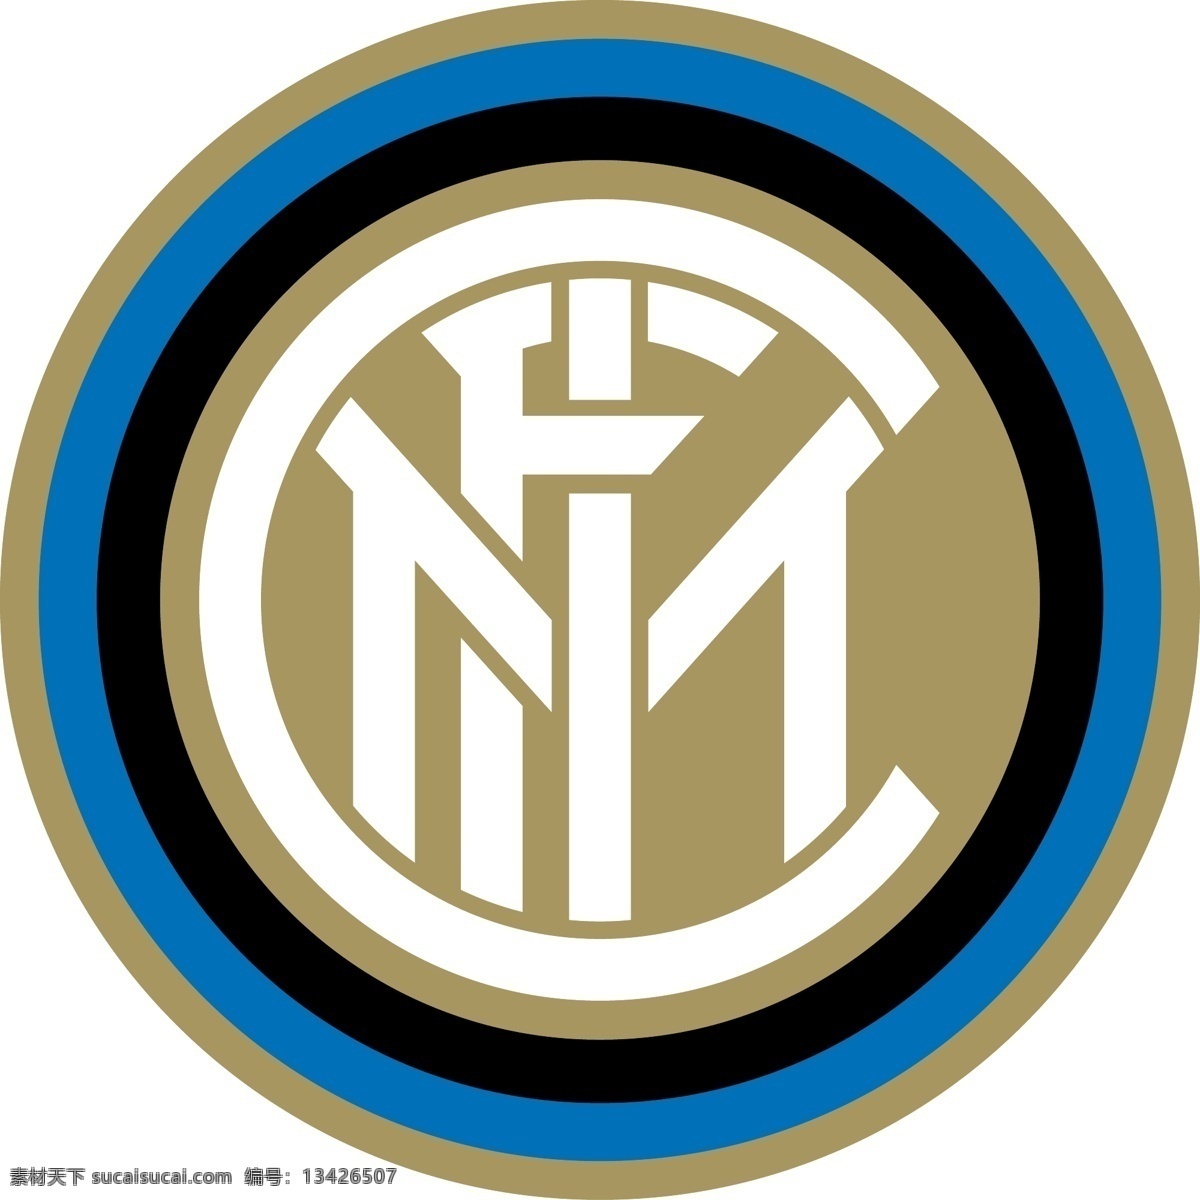 国际米兰 足球 俱乐部 徽标 logo设计 比赛 米兰 意大利 意甲 甲级 联赛 矢量图